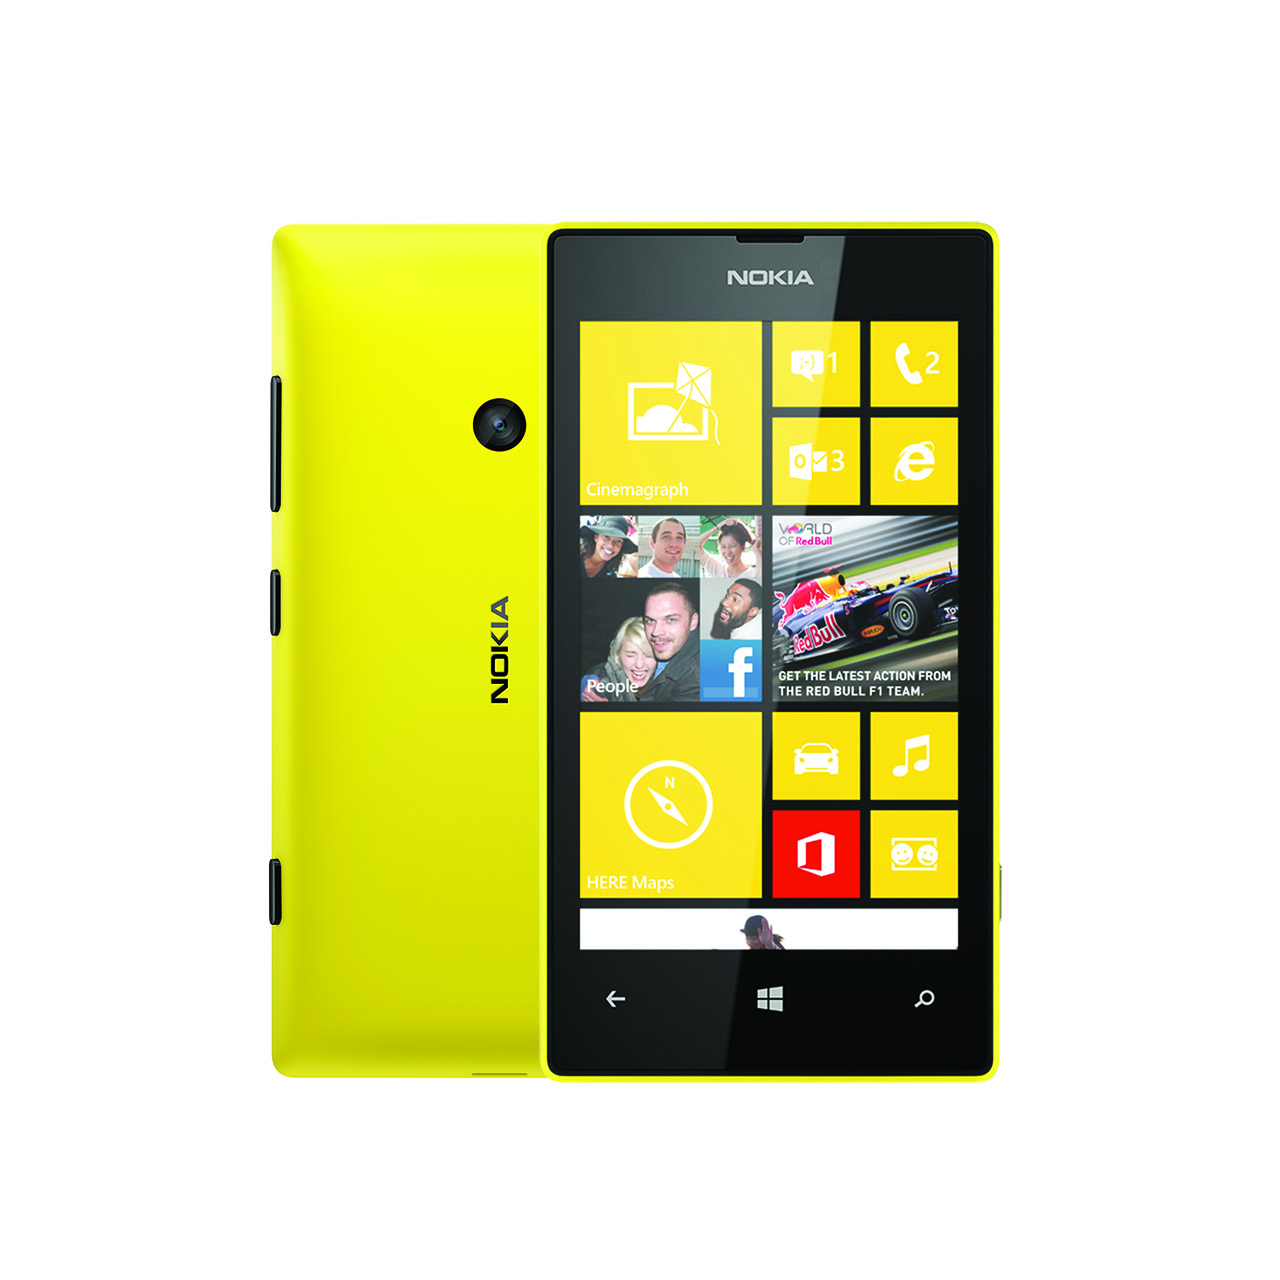 Risorsa grafica - foto, screenshot o immagine in genere - relativa ai contenuti pubblicati da unixzone.it | Nome immagine: news24810_Nokia-Lumia-520_1.jpg